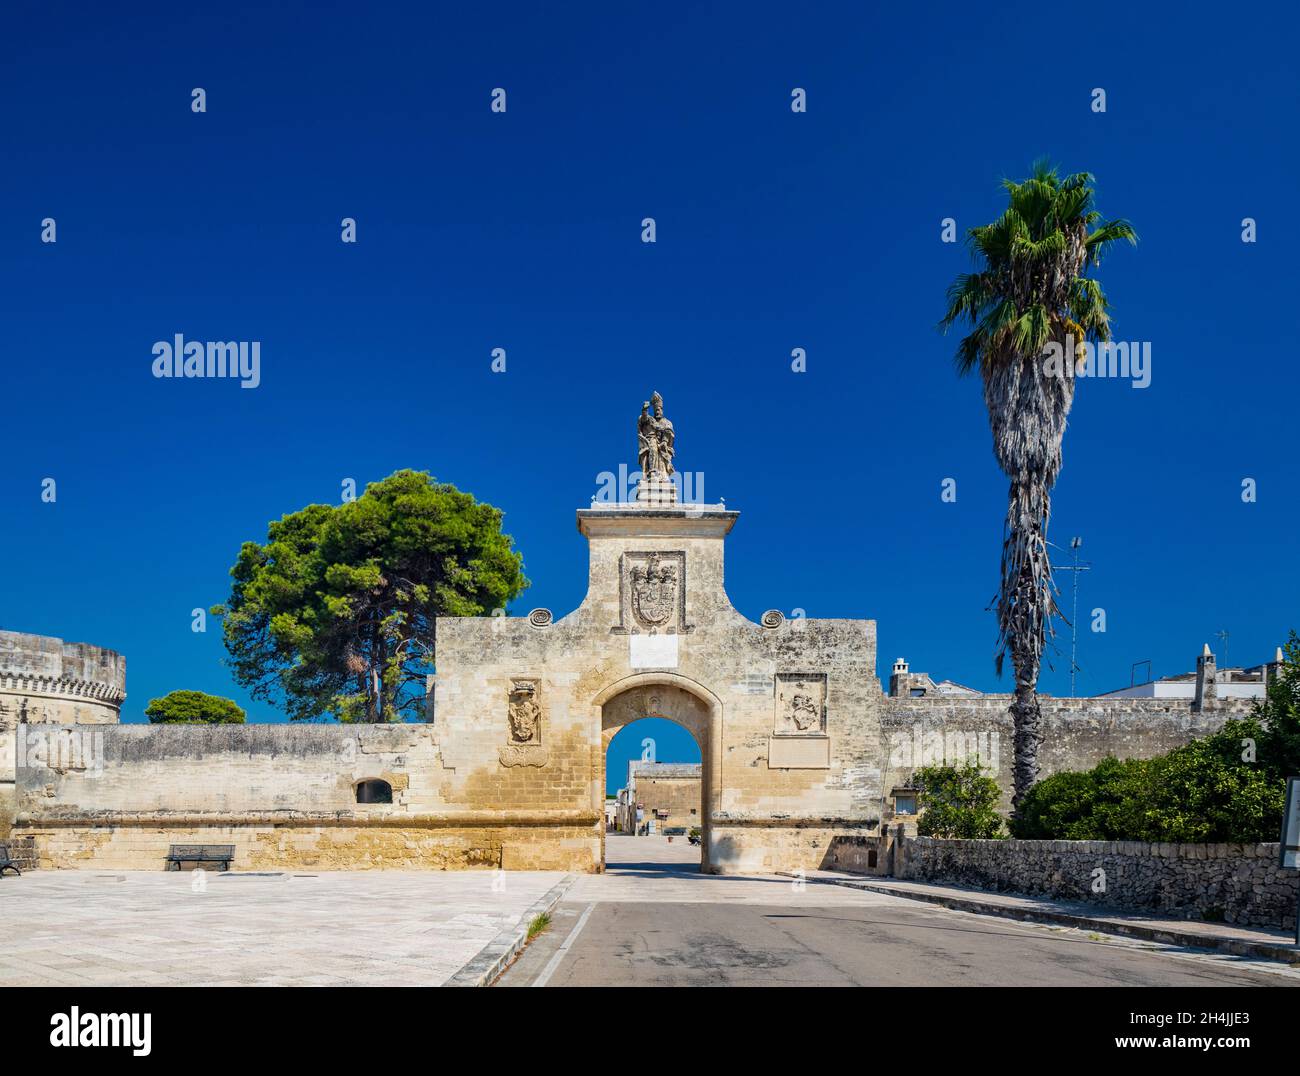 Das kleine befestigte Dorf Acaya, Lecce, Salento, Apulien, Italien. Der große gepflasterter Platz. Das Tor zur Stadt, mit dem großen Bogen und Th Stockfoto